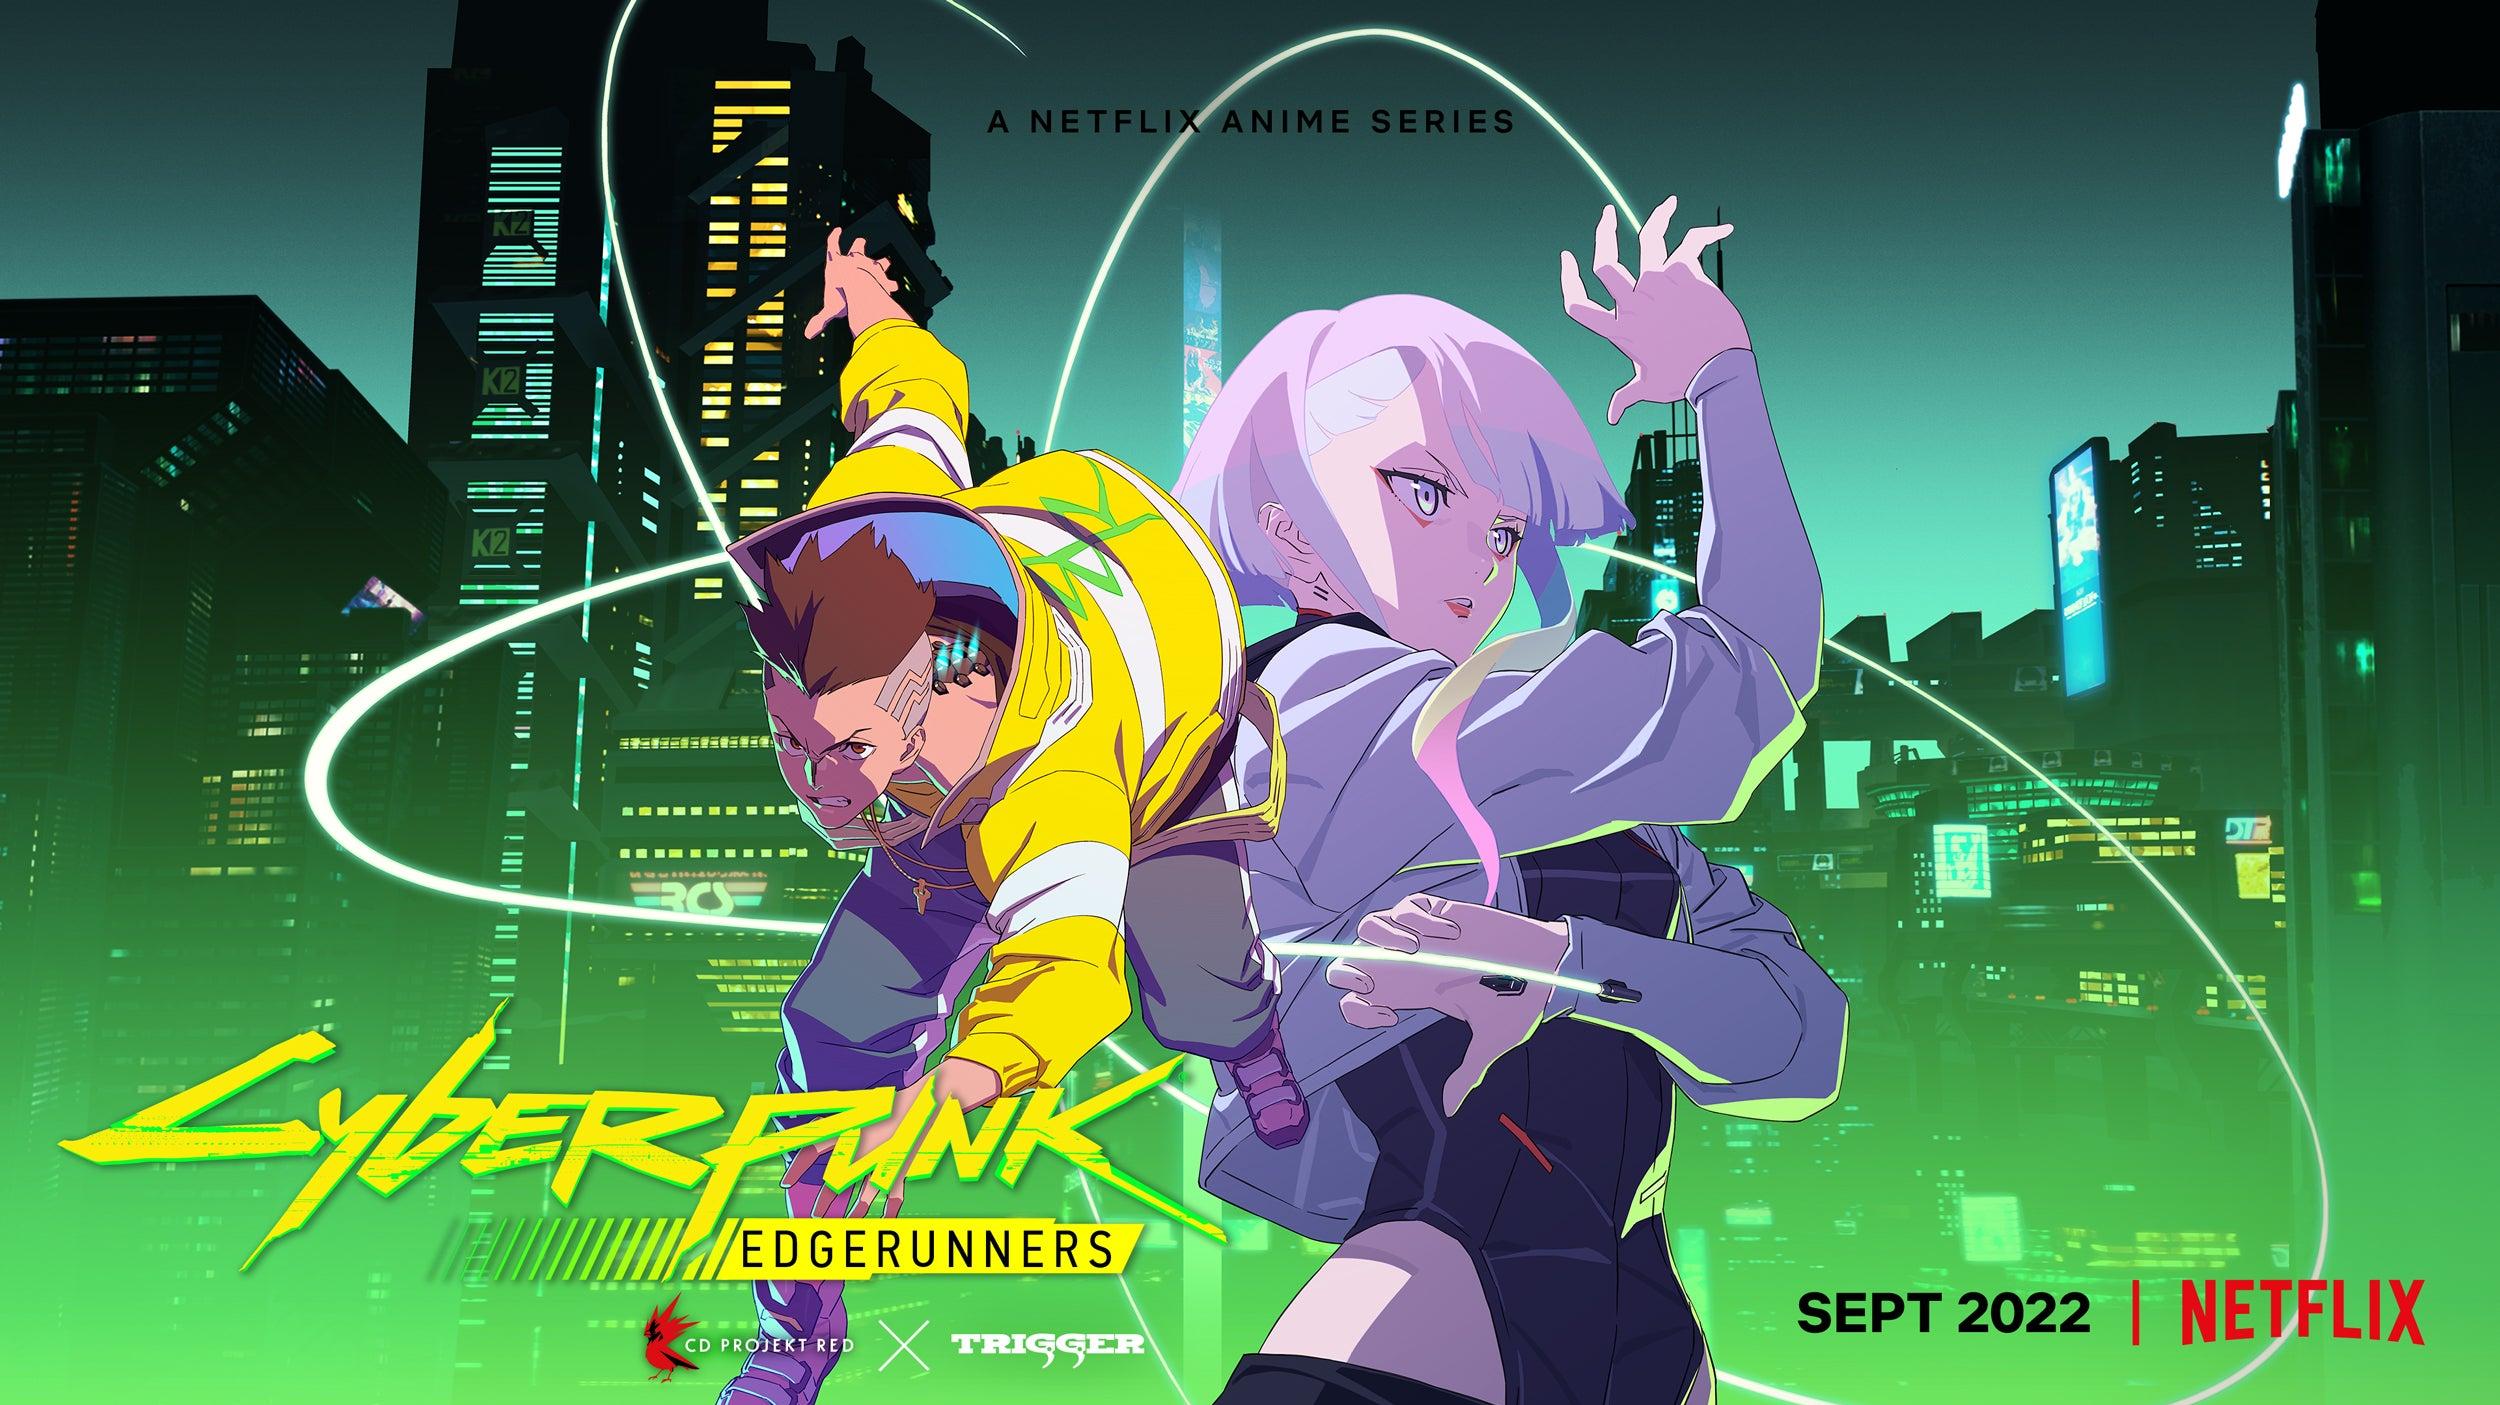 Cyberpunk Edgerunners Flix Series Arrives In September Ign